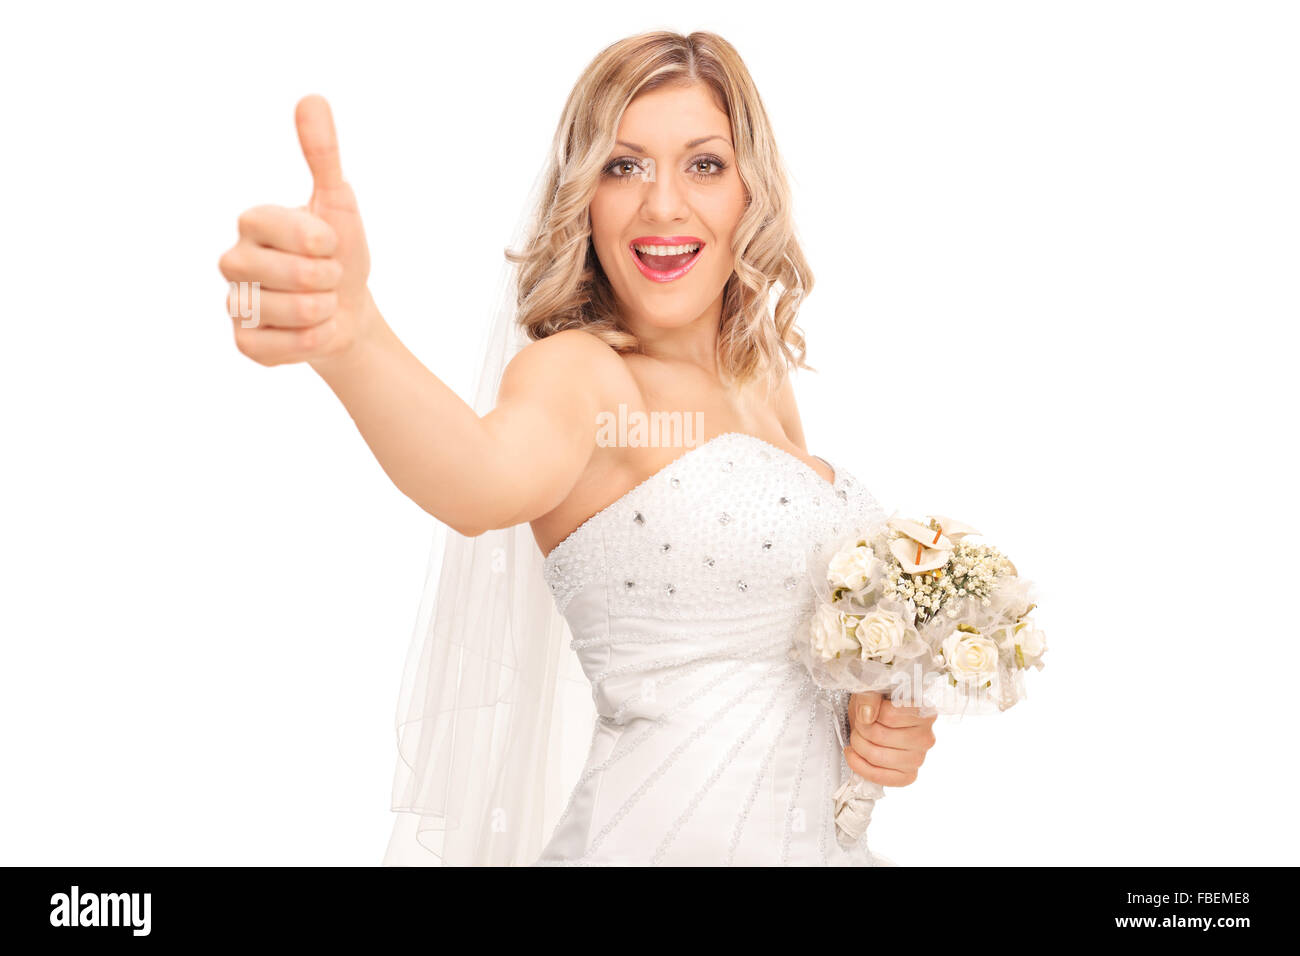 Les jeunes joyeux bride holding a bouquet de mariage et donner un pouce vers le haut isolé sur fond blanc Banque D'Images